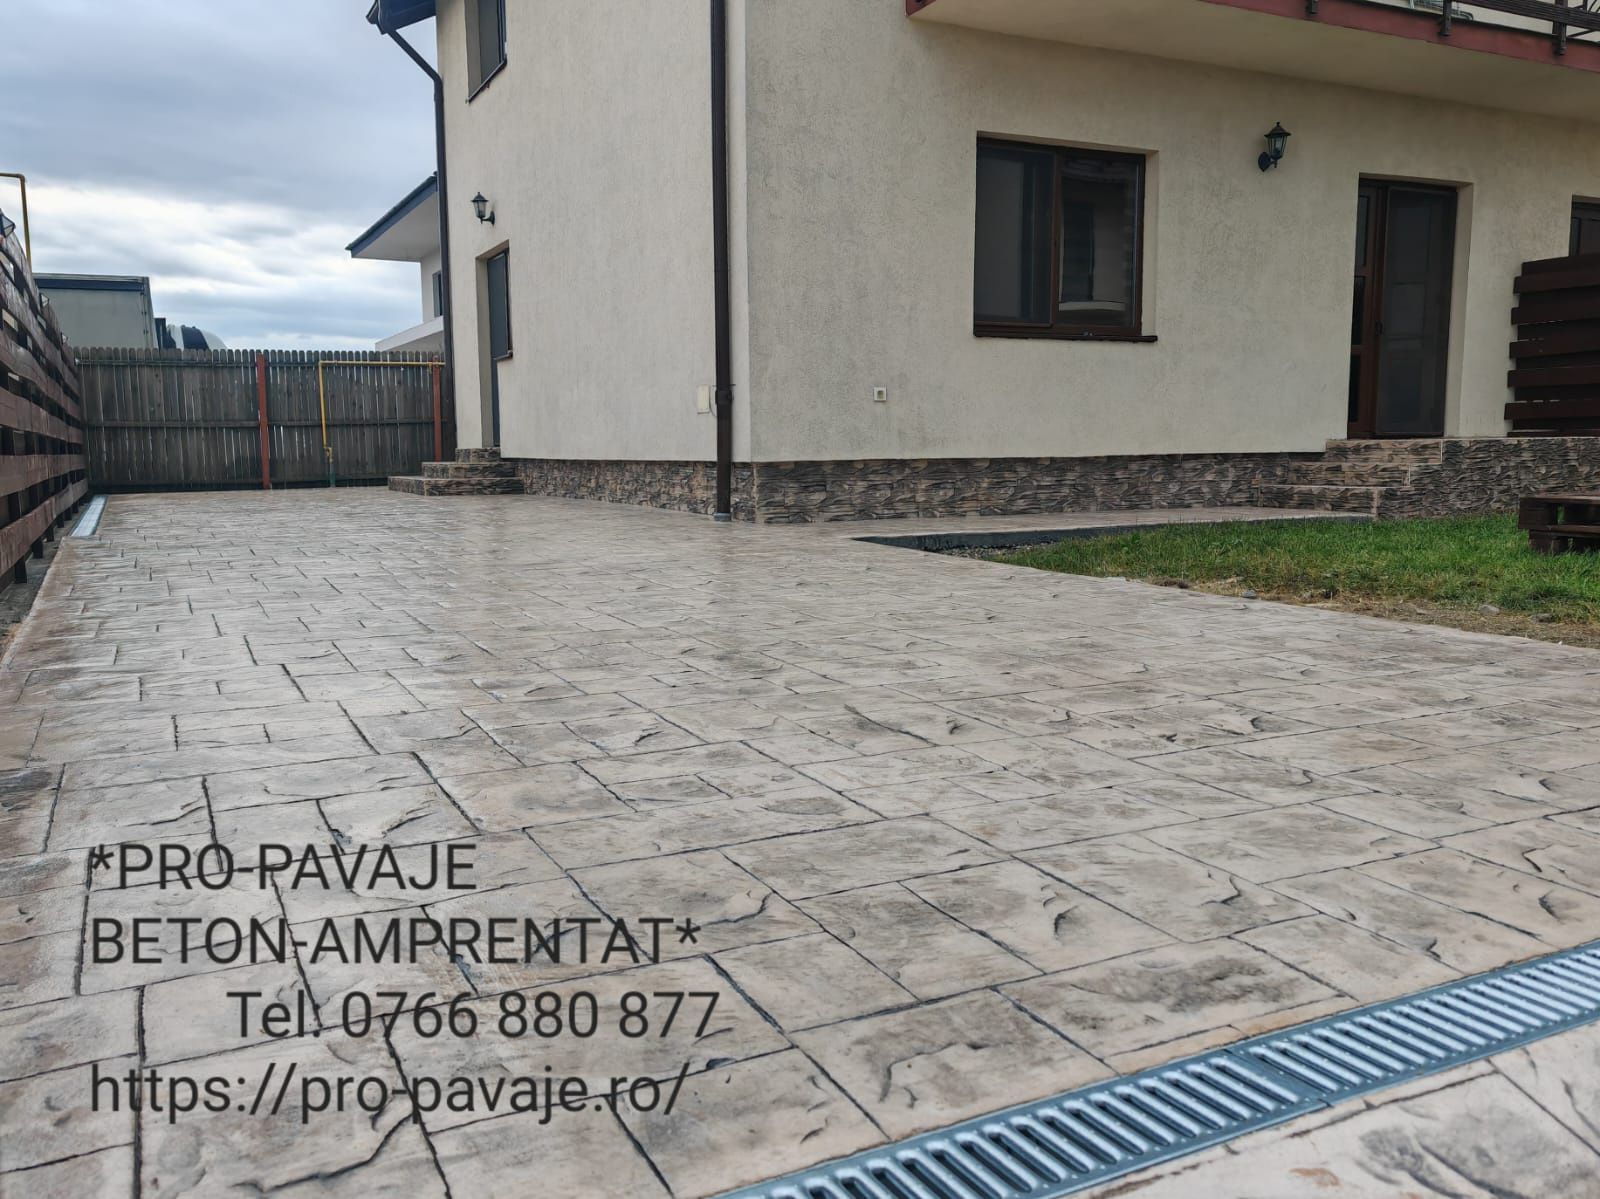 Pavaje din beton amprentat în Argeș, Vâlcea, Sibiu, Dolj, Gorj, Olt.